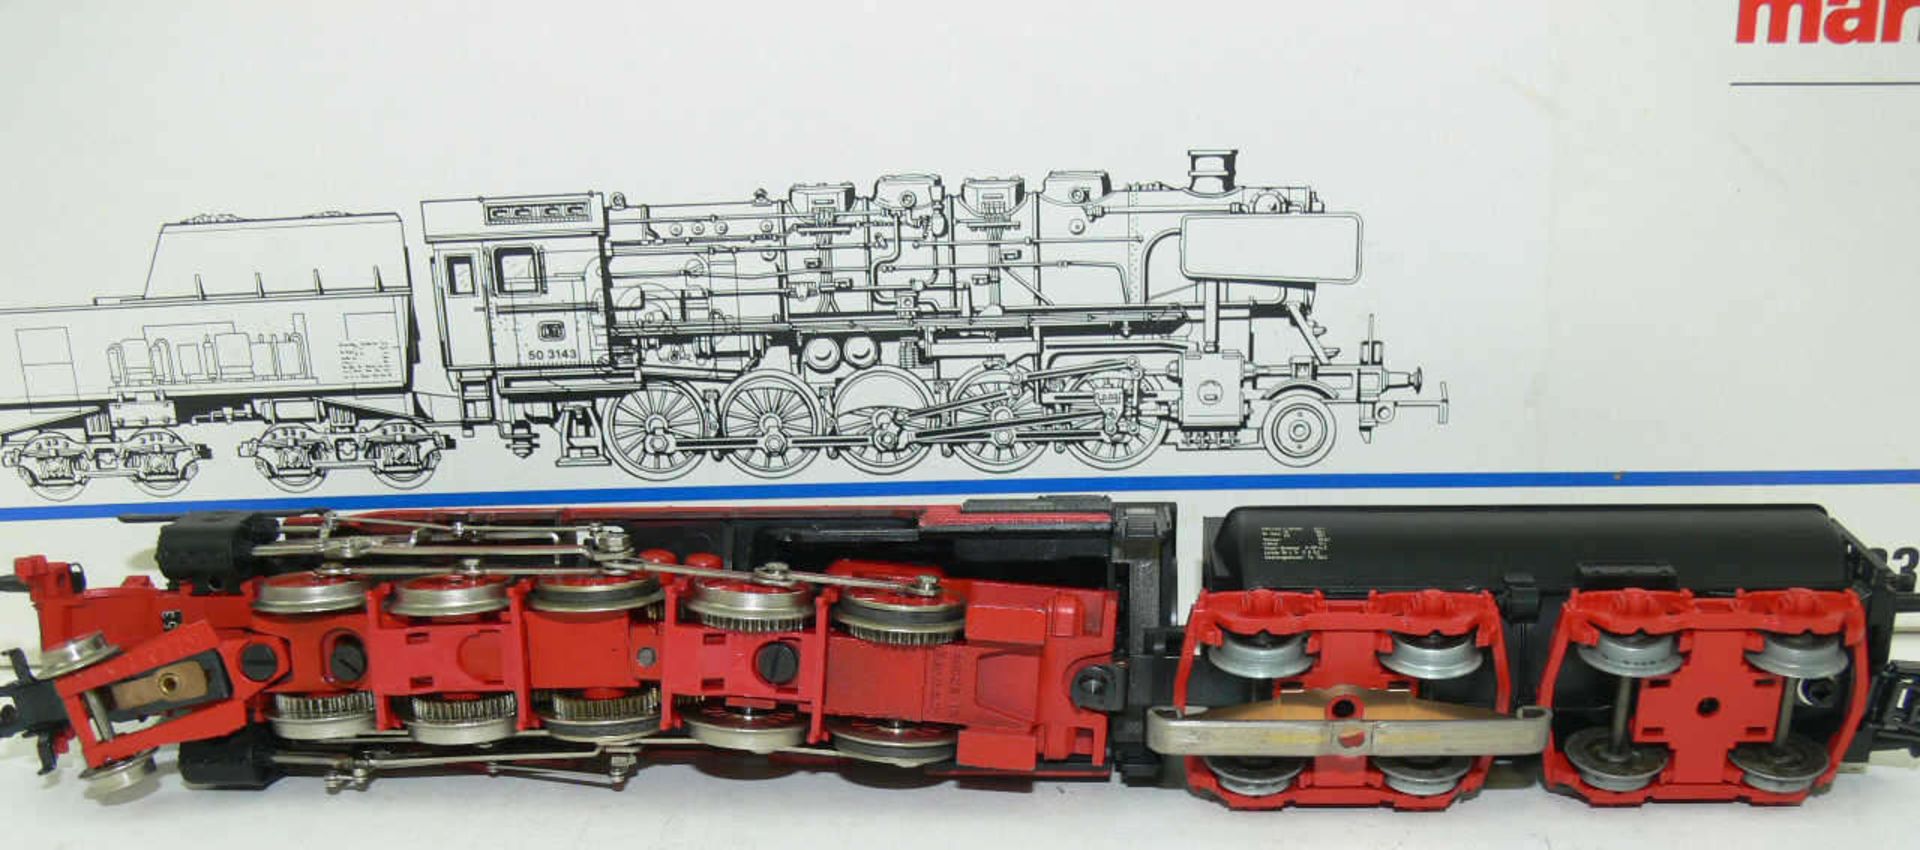 Märklin H0 3315, Dampflokomotive mit Schlepptender BR 50 der DB. BN 50 3143. Leichte Laufspuren. - Bild 2 aus 2